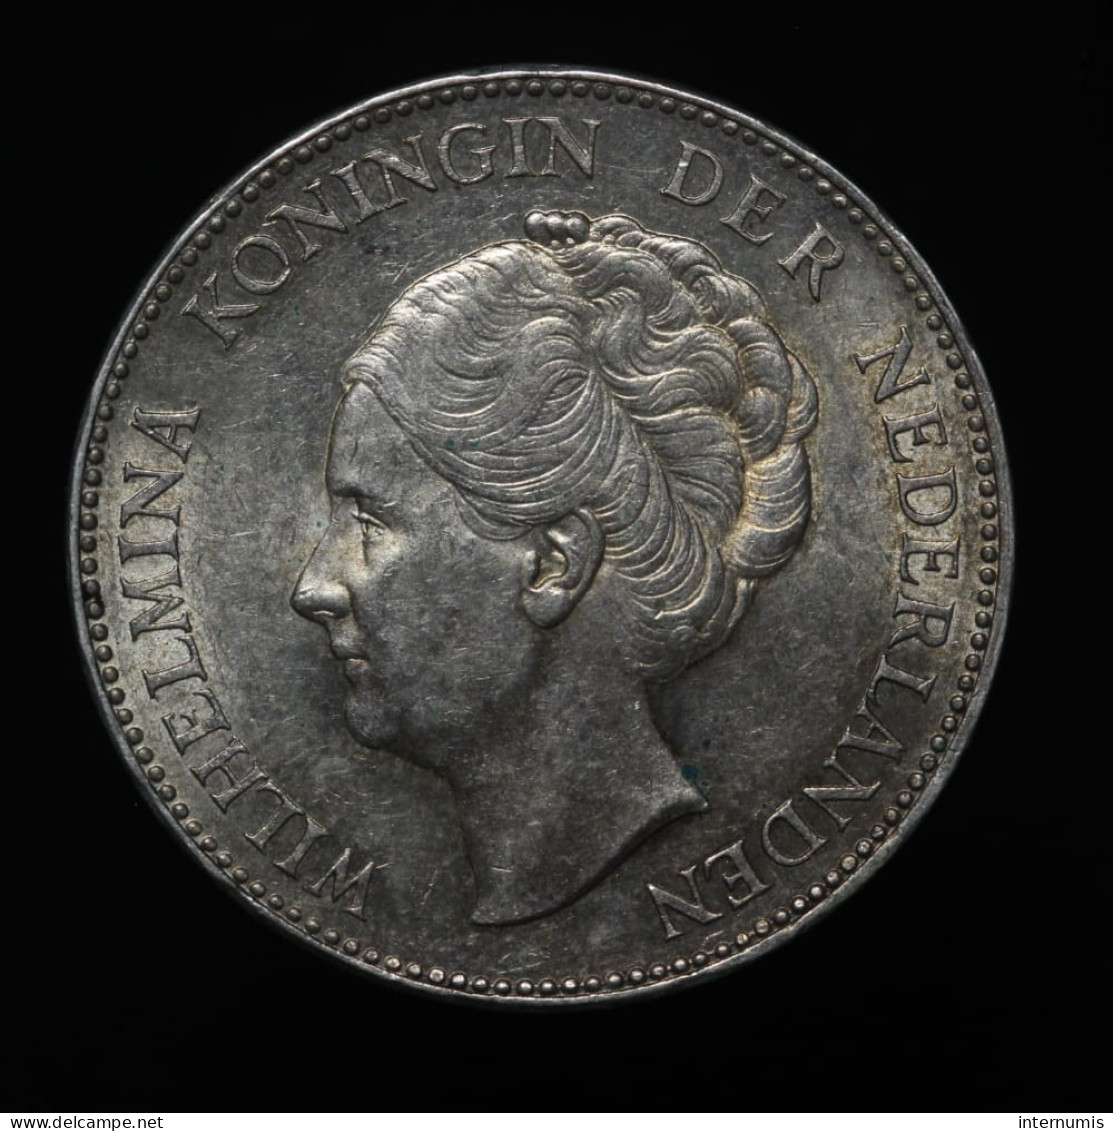 Pays Bas / Netherlands, Wilhelmina, 1 Gulden, 1940, Argent (Silver), NC (UNC), KM#161.1 - 1 Gulden